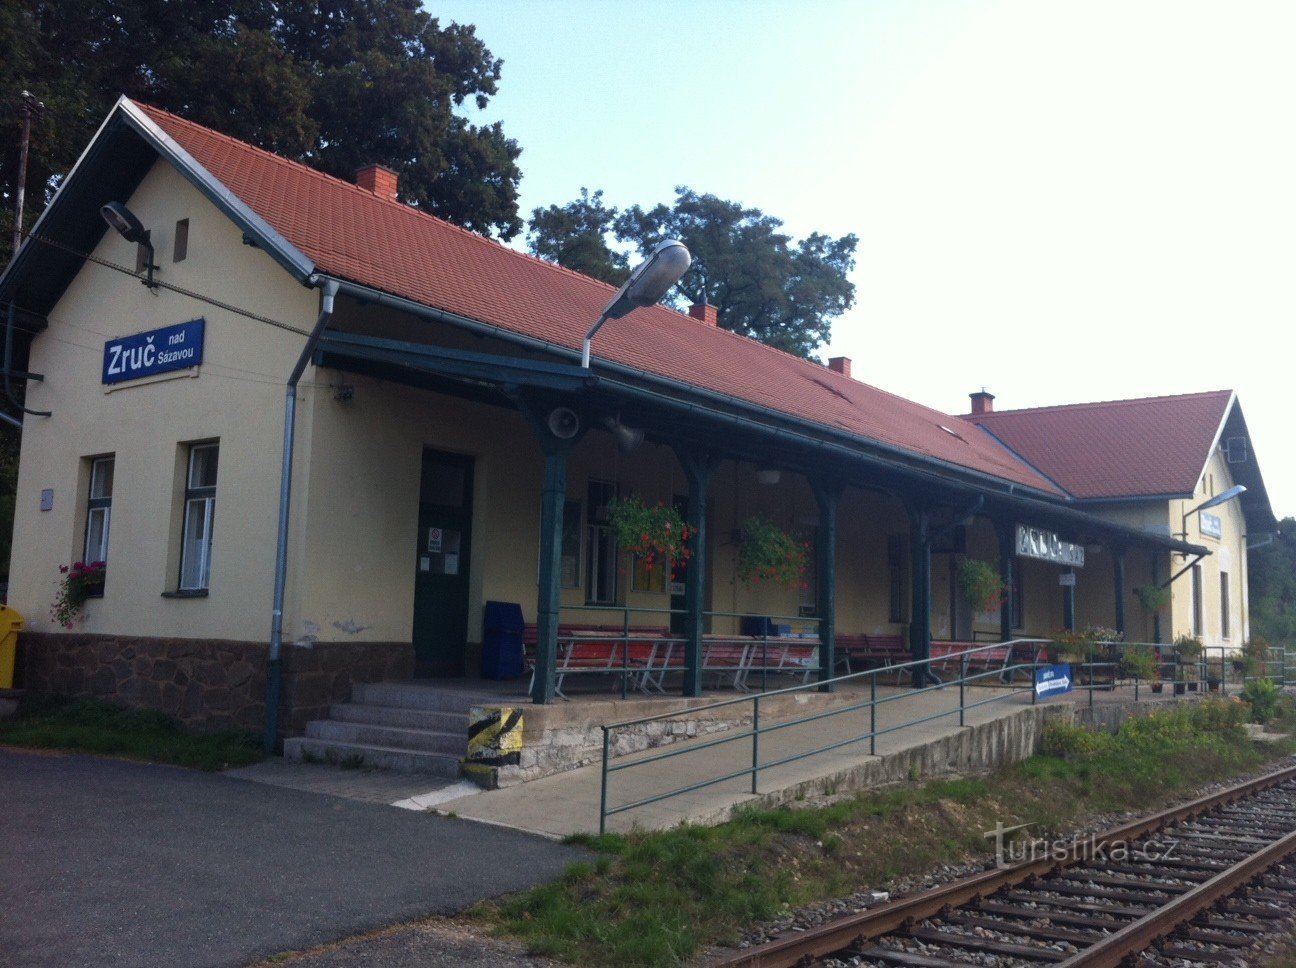 Zruč nad Sázavou railway station